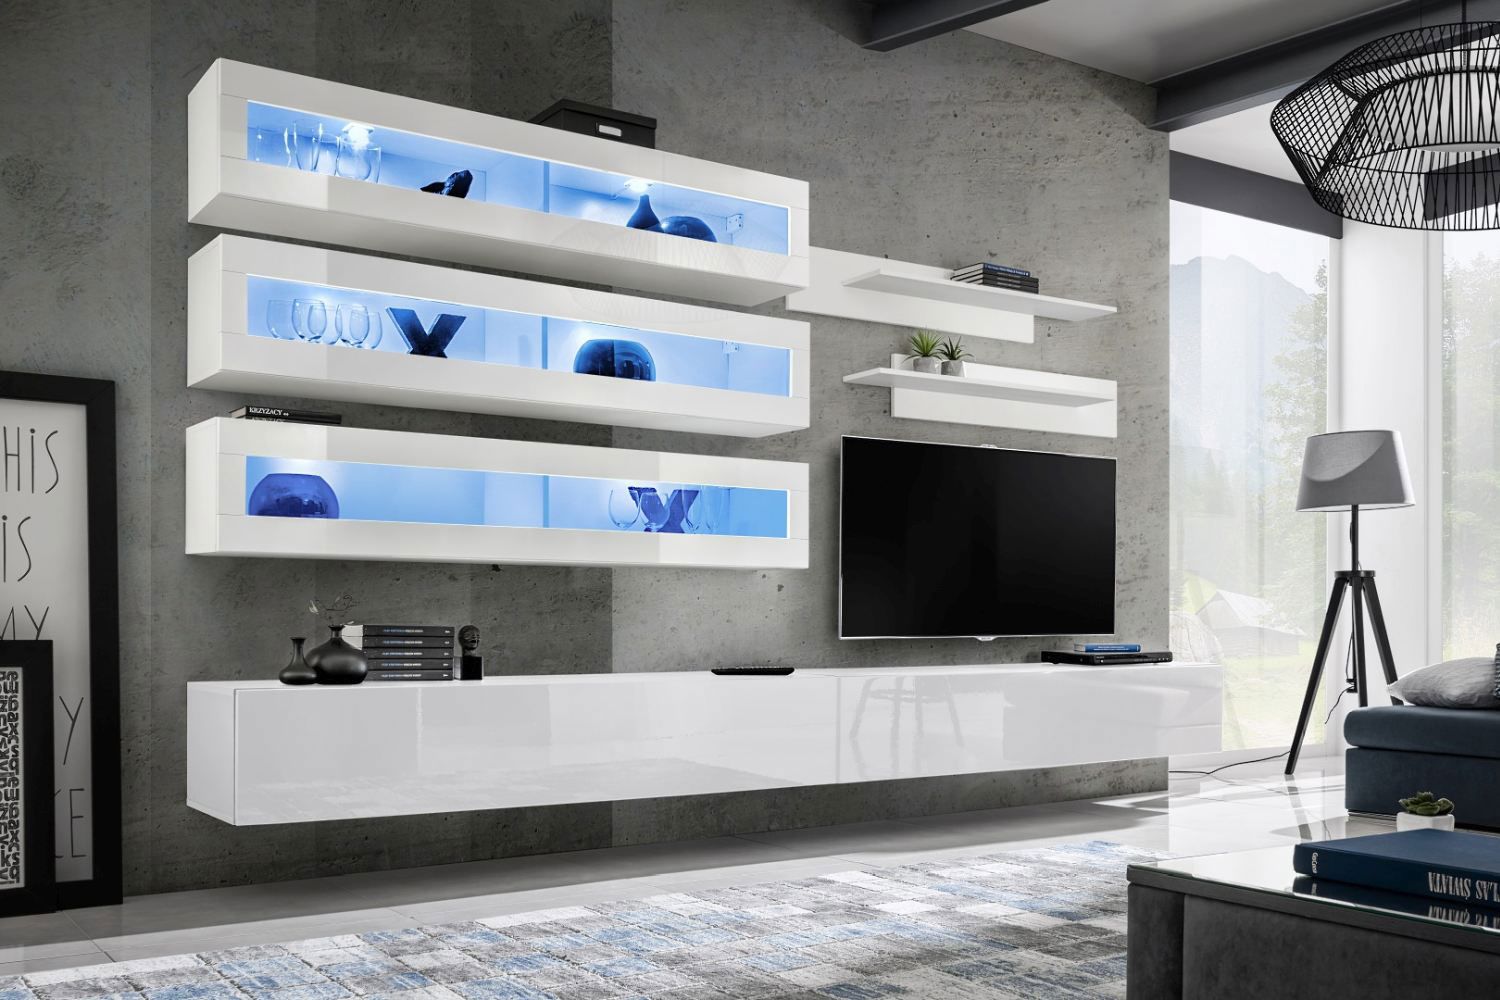 Hompland 101 woonkamer wandmeubel, kleur: wit - Afmetingen: 180 x 320 x 40 cm (H x B x D), met blauwe LED-verlichting